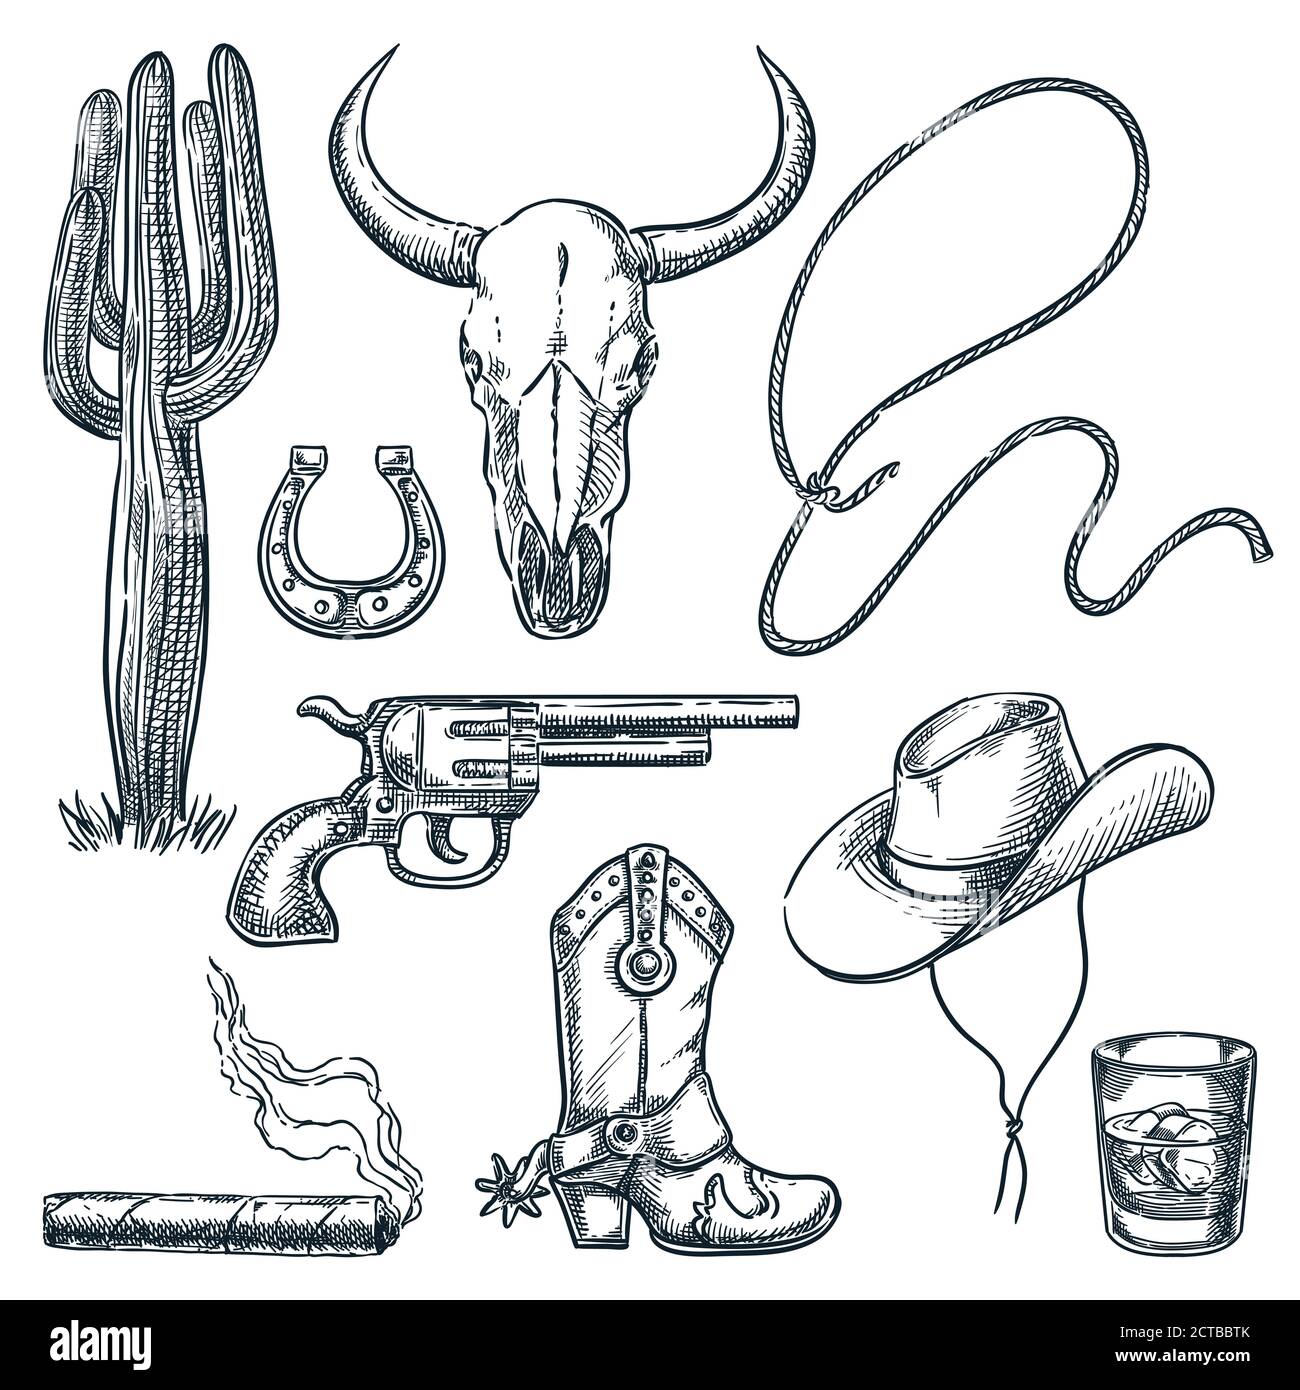 Wild West vintage Symbole isoliert auf weißem Hintergrund. Vektor handgezeichnete Skizzendarstellung. Cowboy Hut und Sporn Stiefel, Kuh Schädel und Pistole Retro-Ikone Stock Vektor